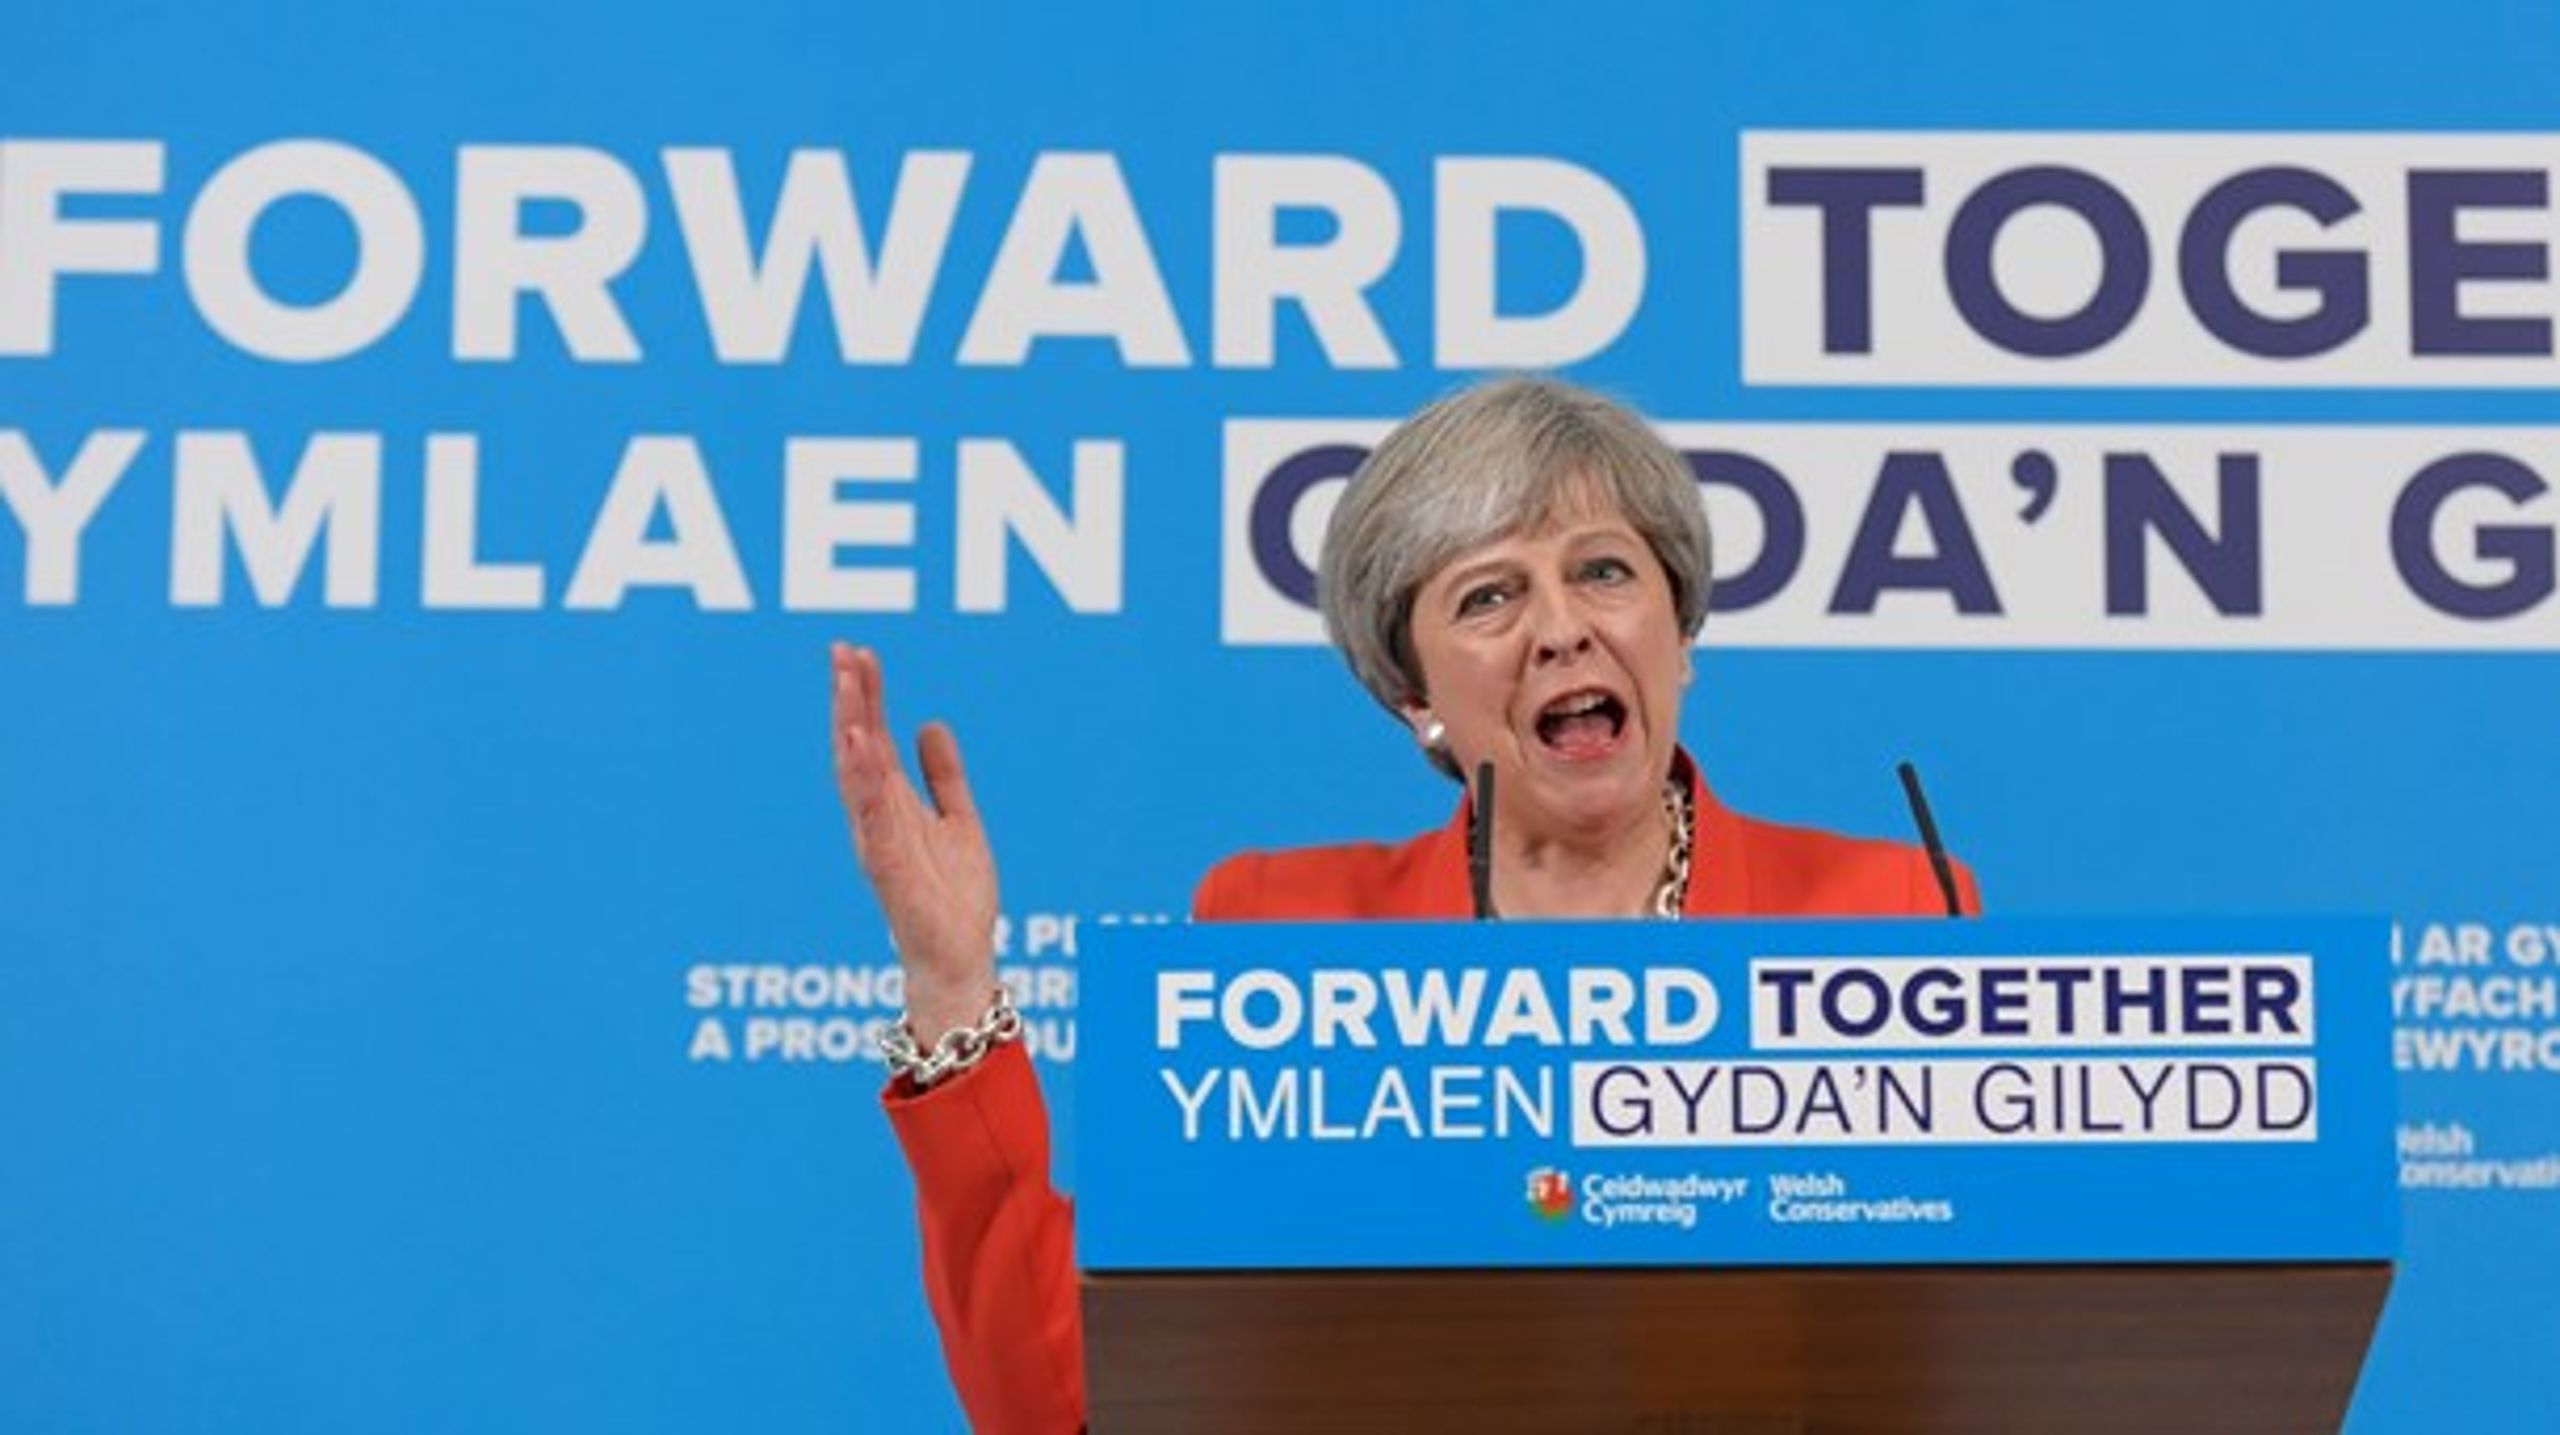 Briterne skal til valg den 8. juni. Premierminister Theresa May ligner stadig en sikker vinder til trods for, at&nbsp;Conservatives forspring er skrumpet i meningsmålingerne, skriver valgforsker Kenneth Thue i sin klumme.&nbsp;